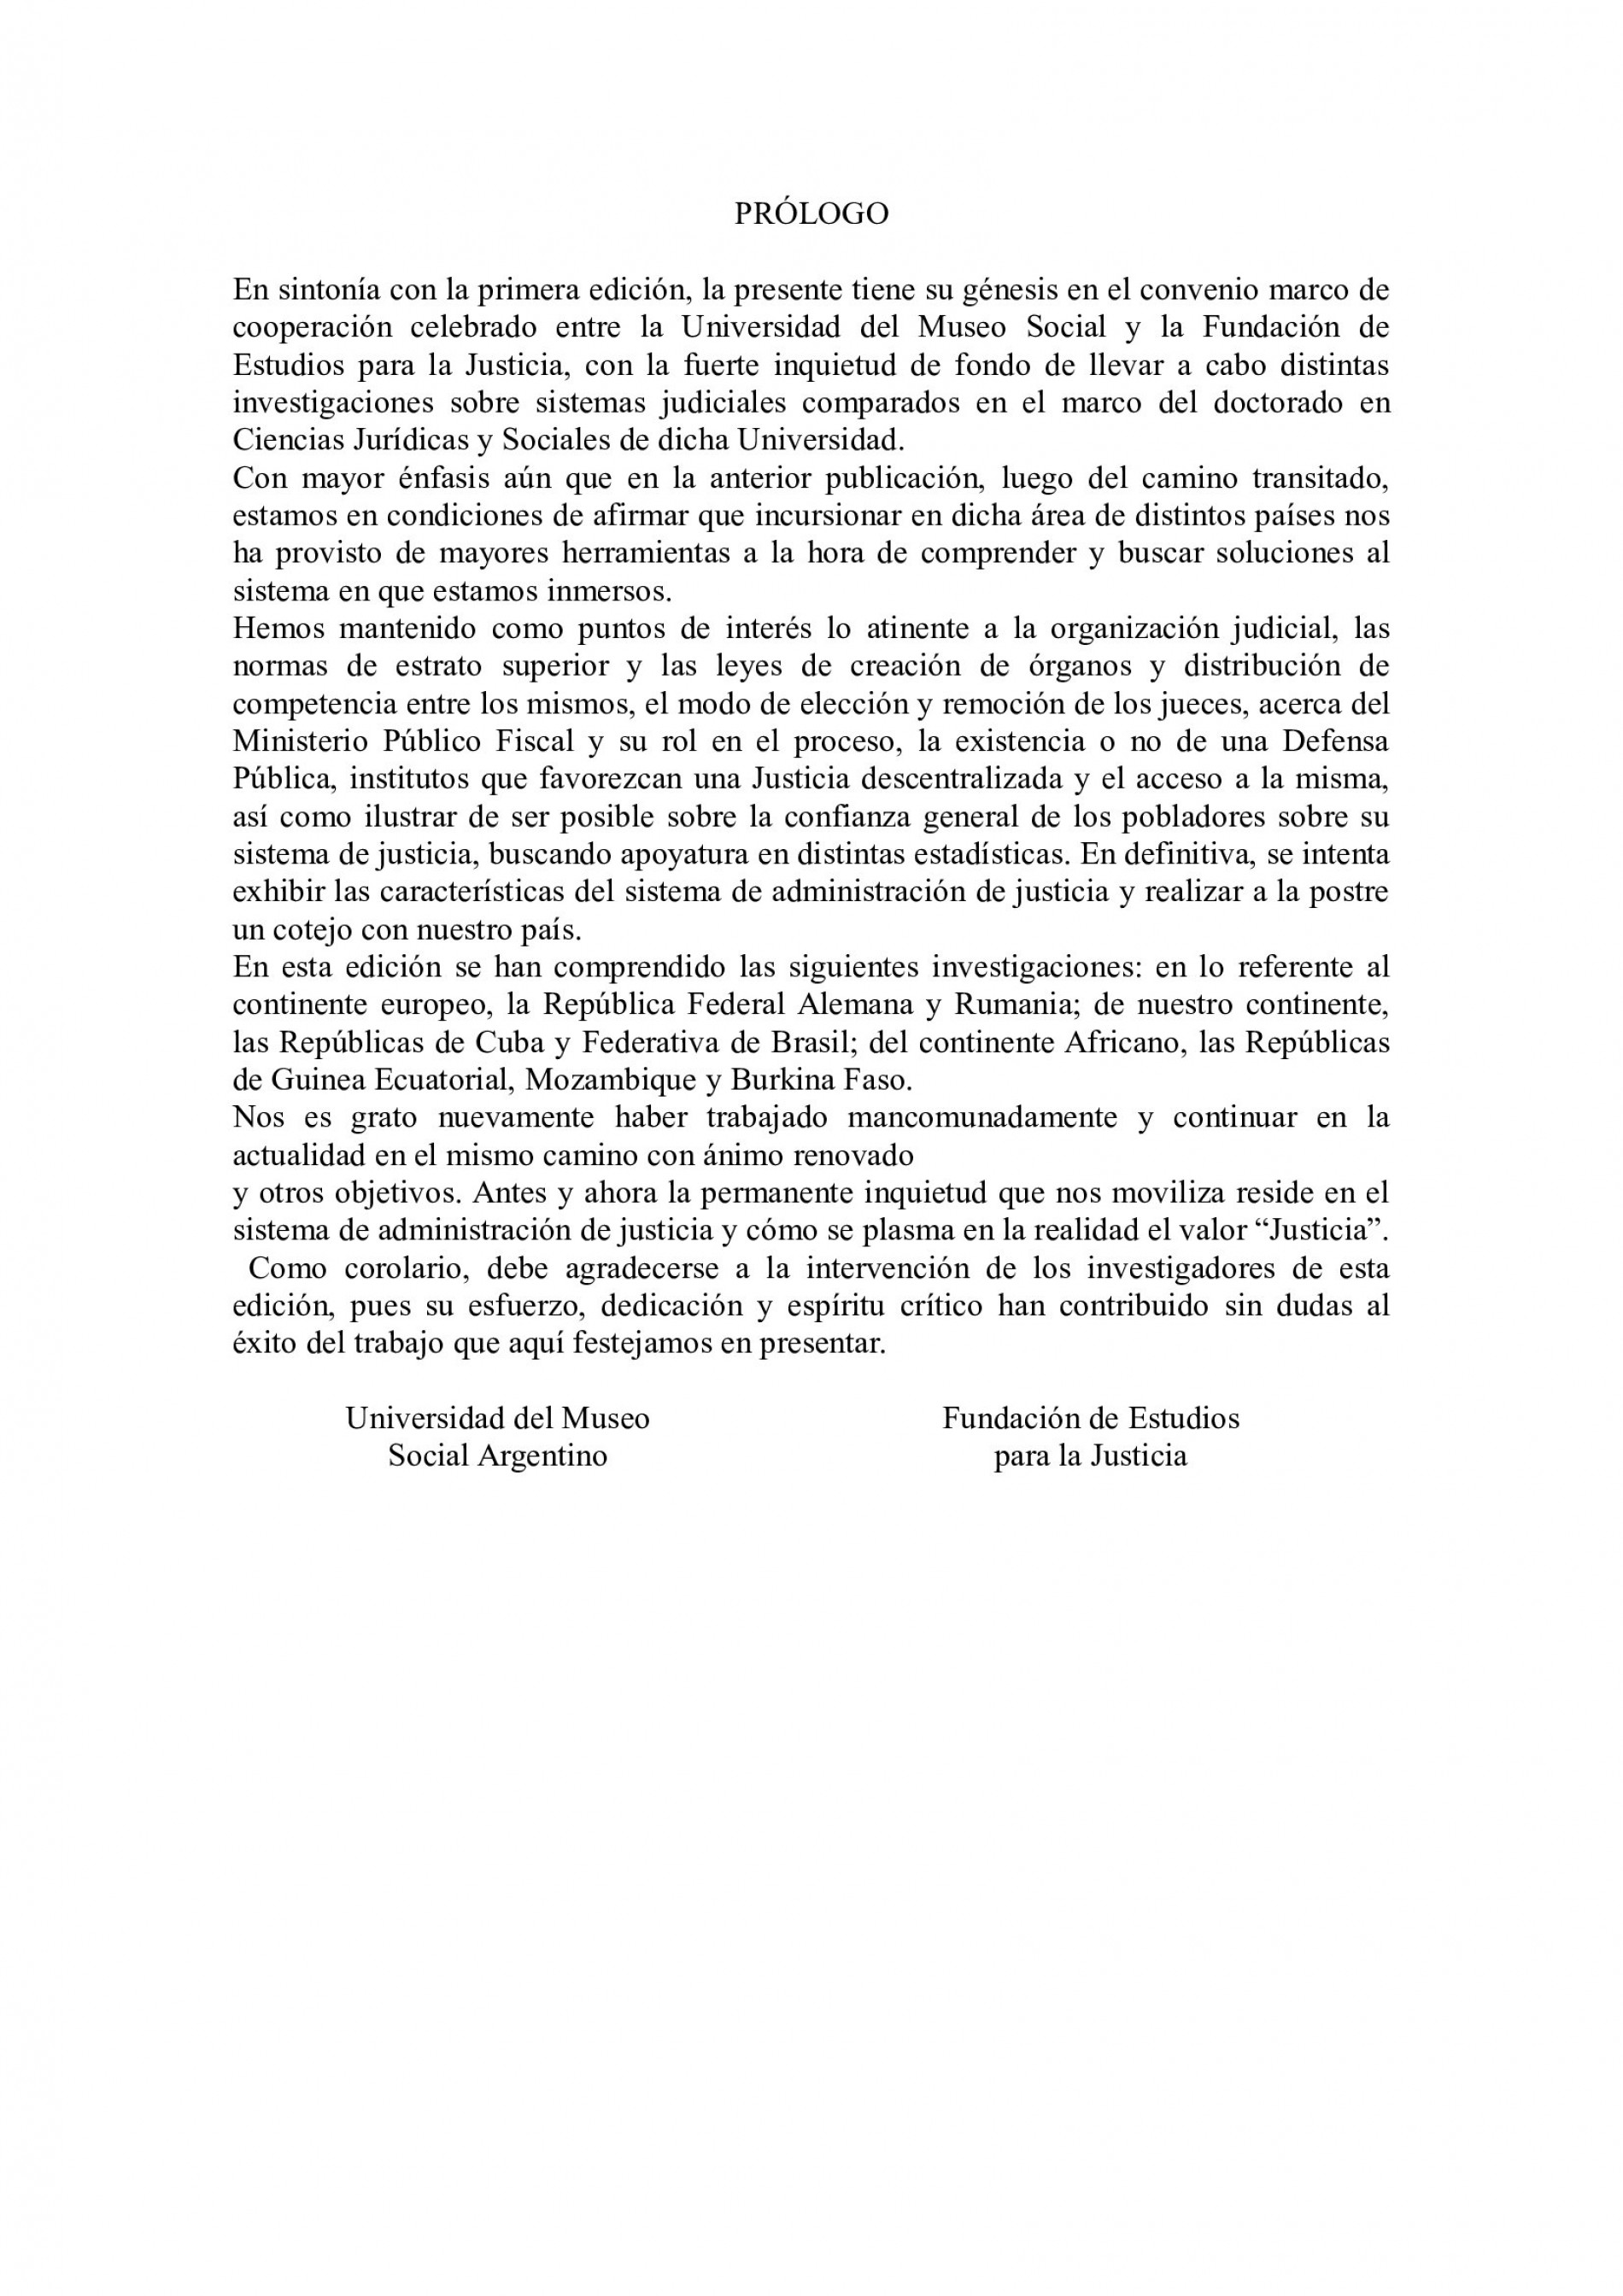 Sistemas Judiciales Comparados II. COORDINADOR: Nicolás Grappasonno.